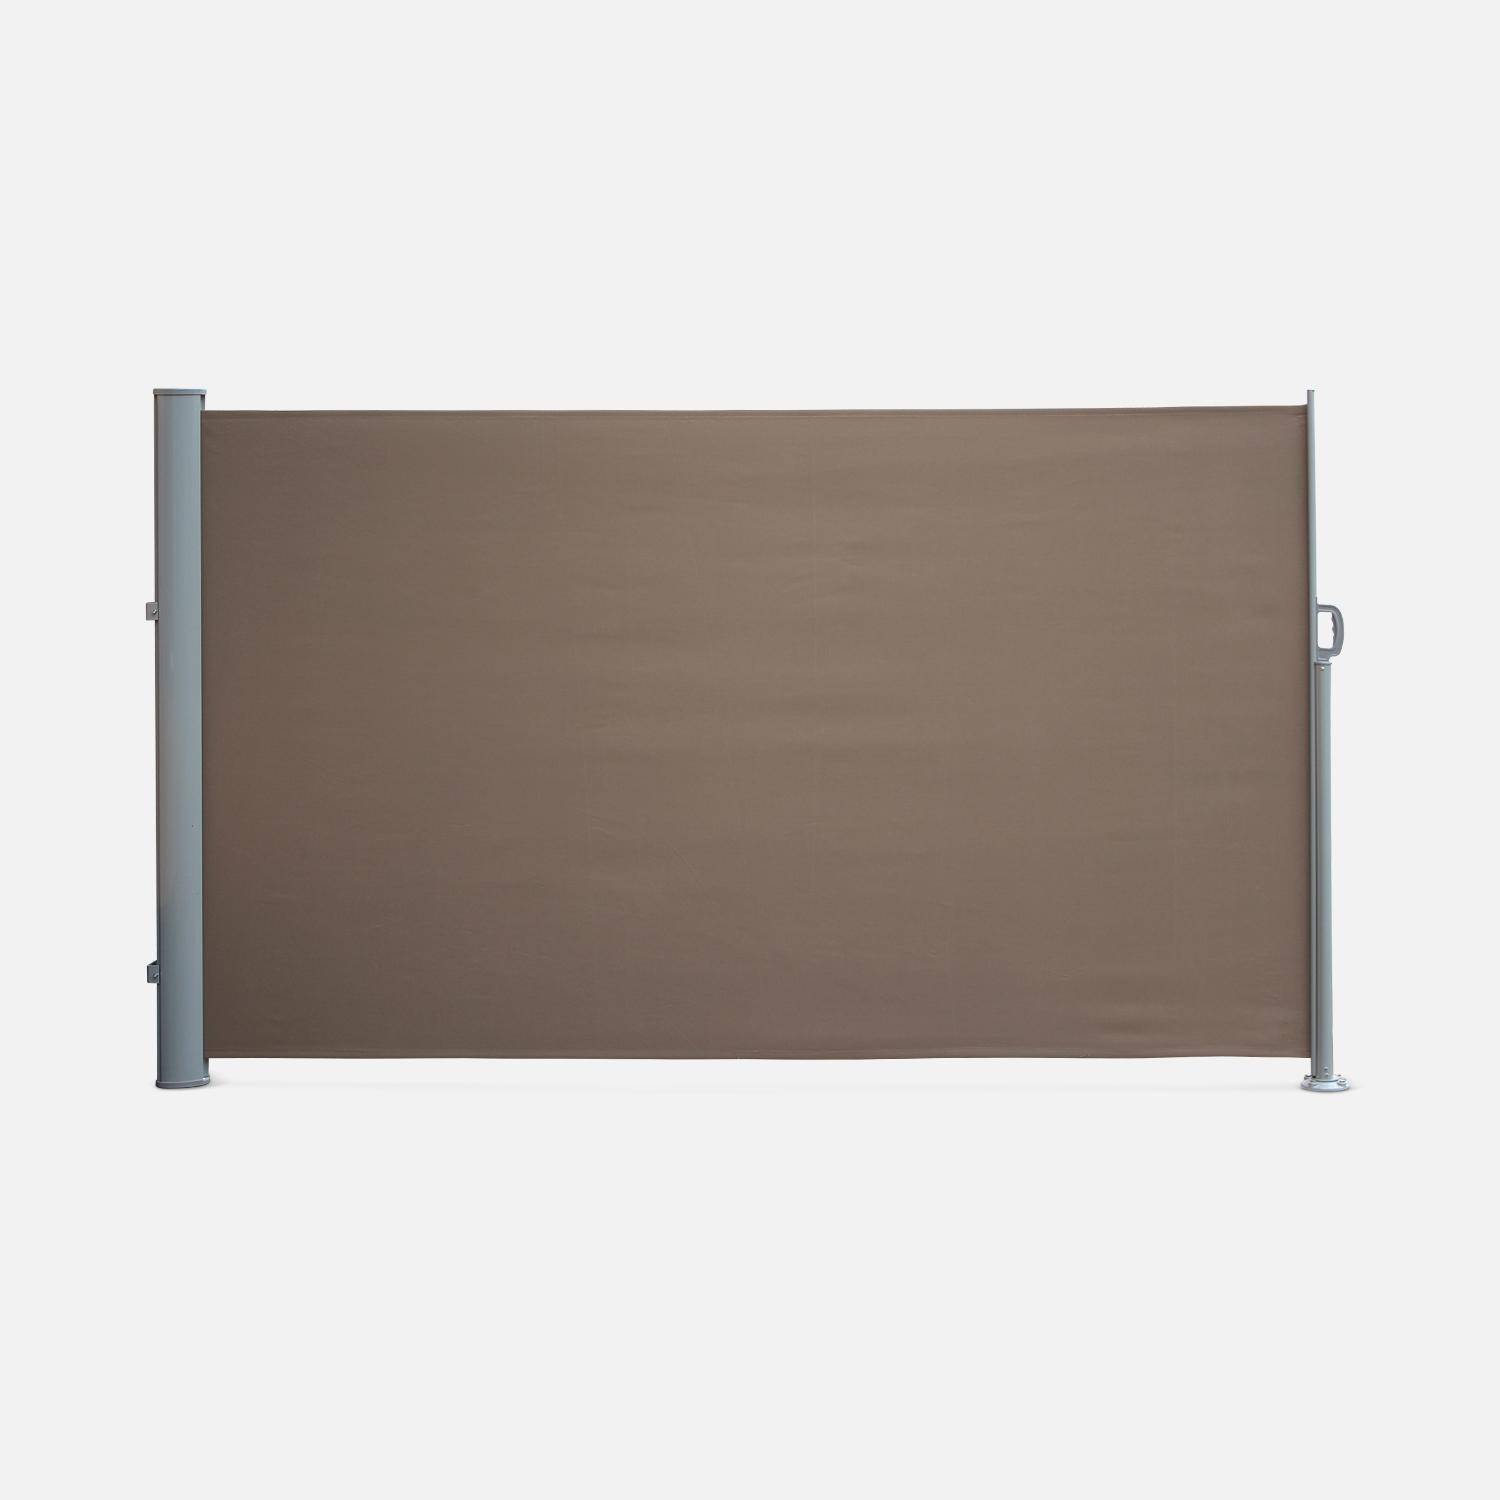 Cortina de exterior retangular, poliéster, castanho, 300x160 cm Photo2